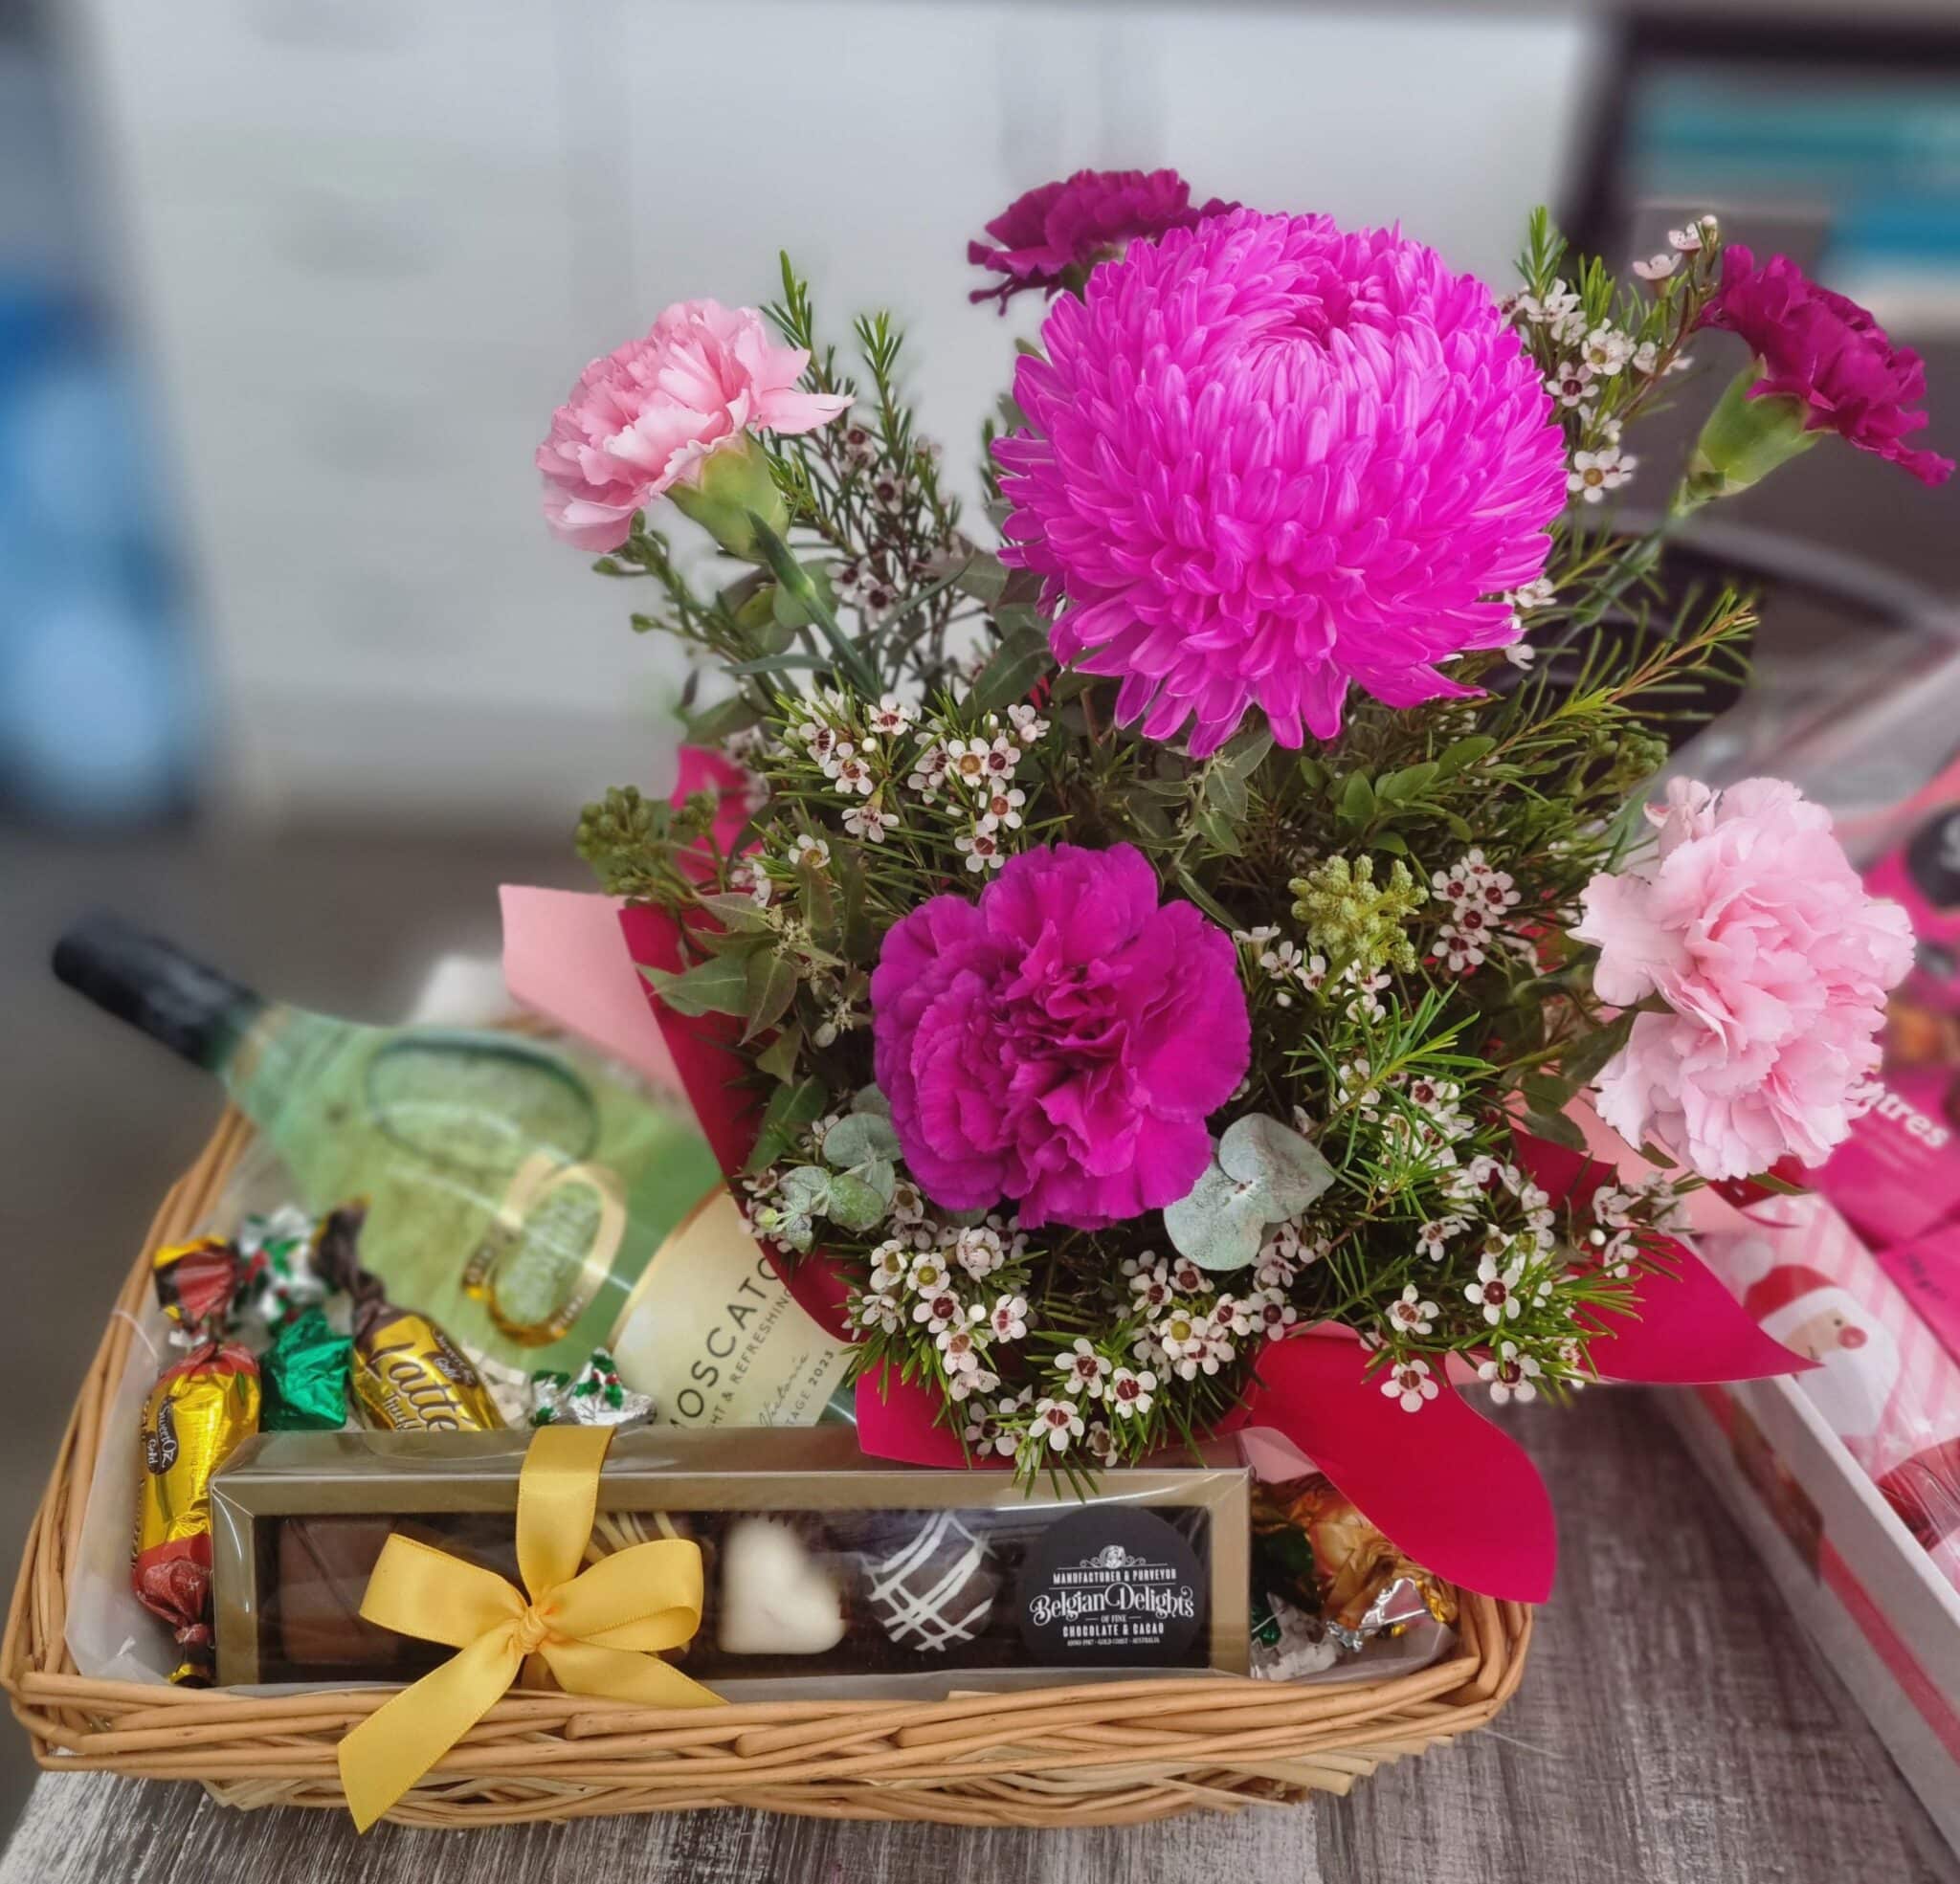 Floral Impression Gift Basket